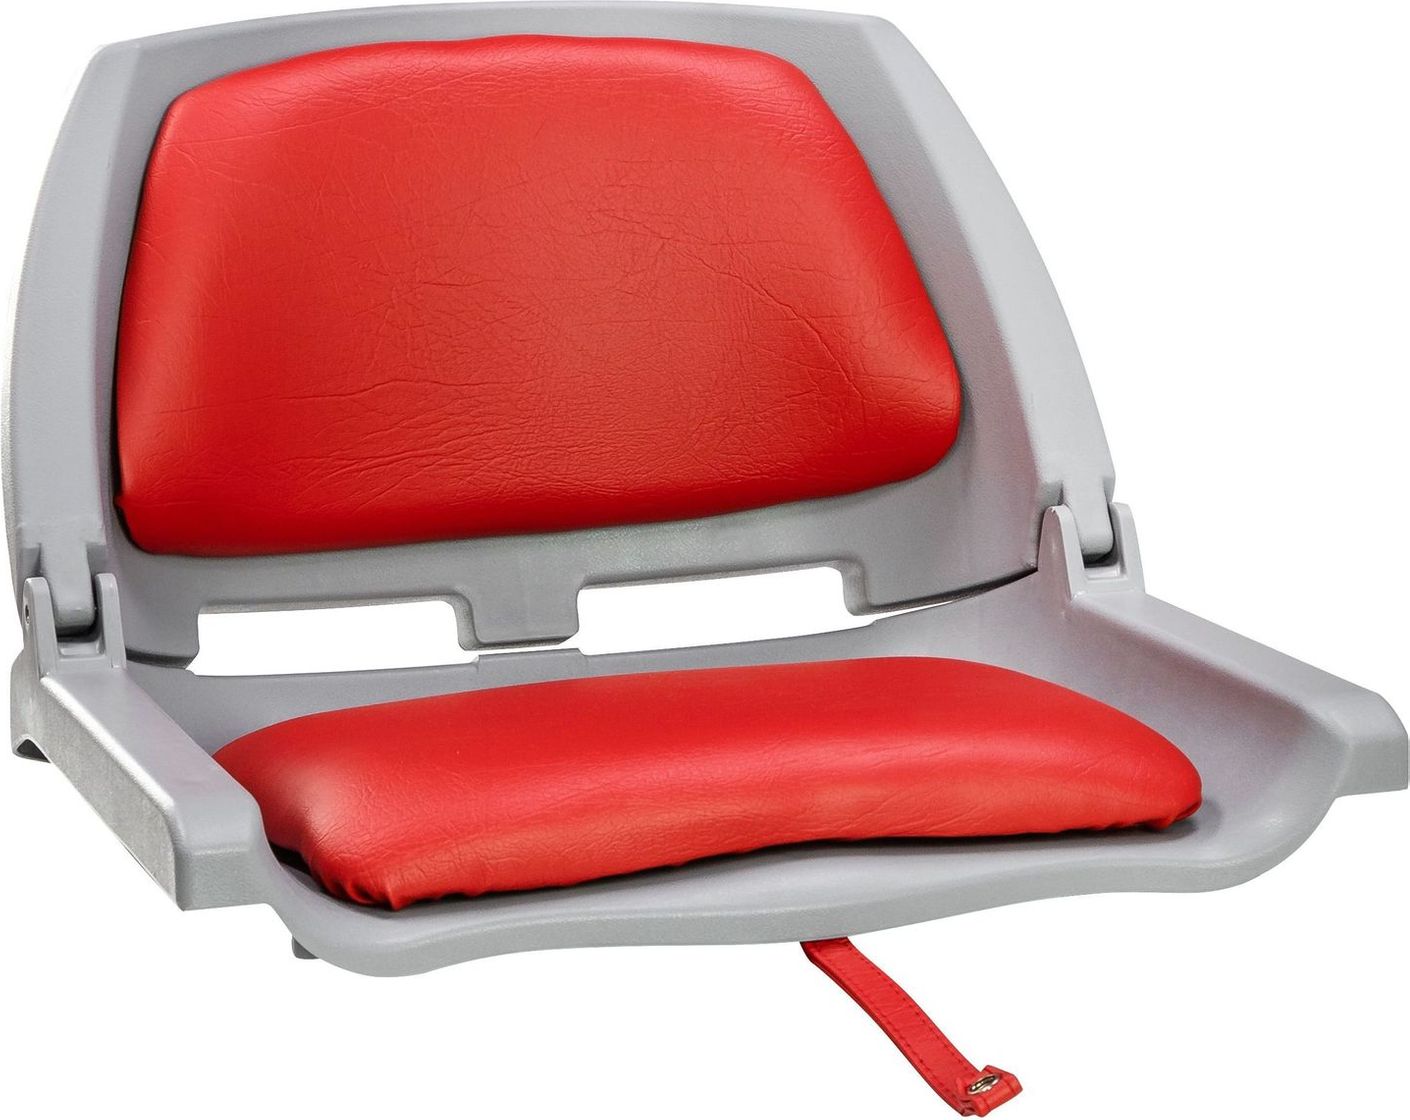 Кресло складное мягкое TRAVELER, цвет серый/красный (упаковка из 2 шт.) 1061114C_pkg_2 кресло складное мягкое traveler обивка камуфляжная ткань break up упаковка из 2 шт 1061106c pkg 2